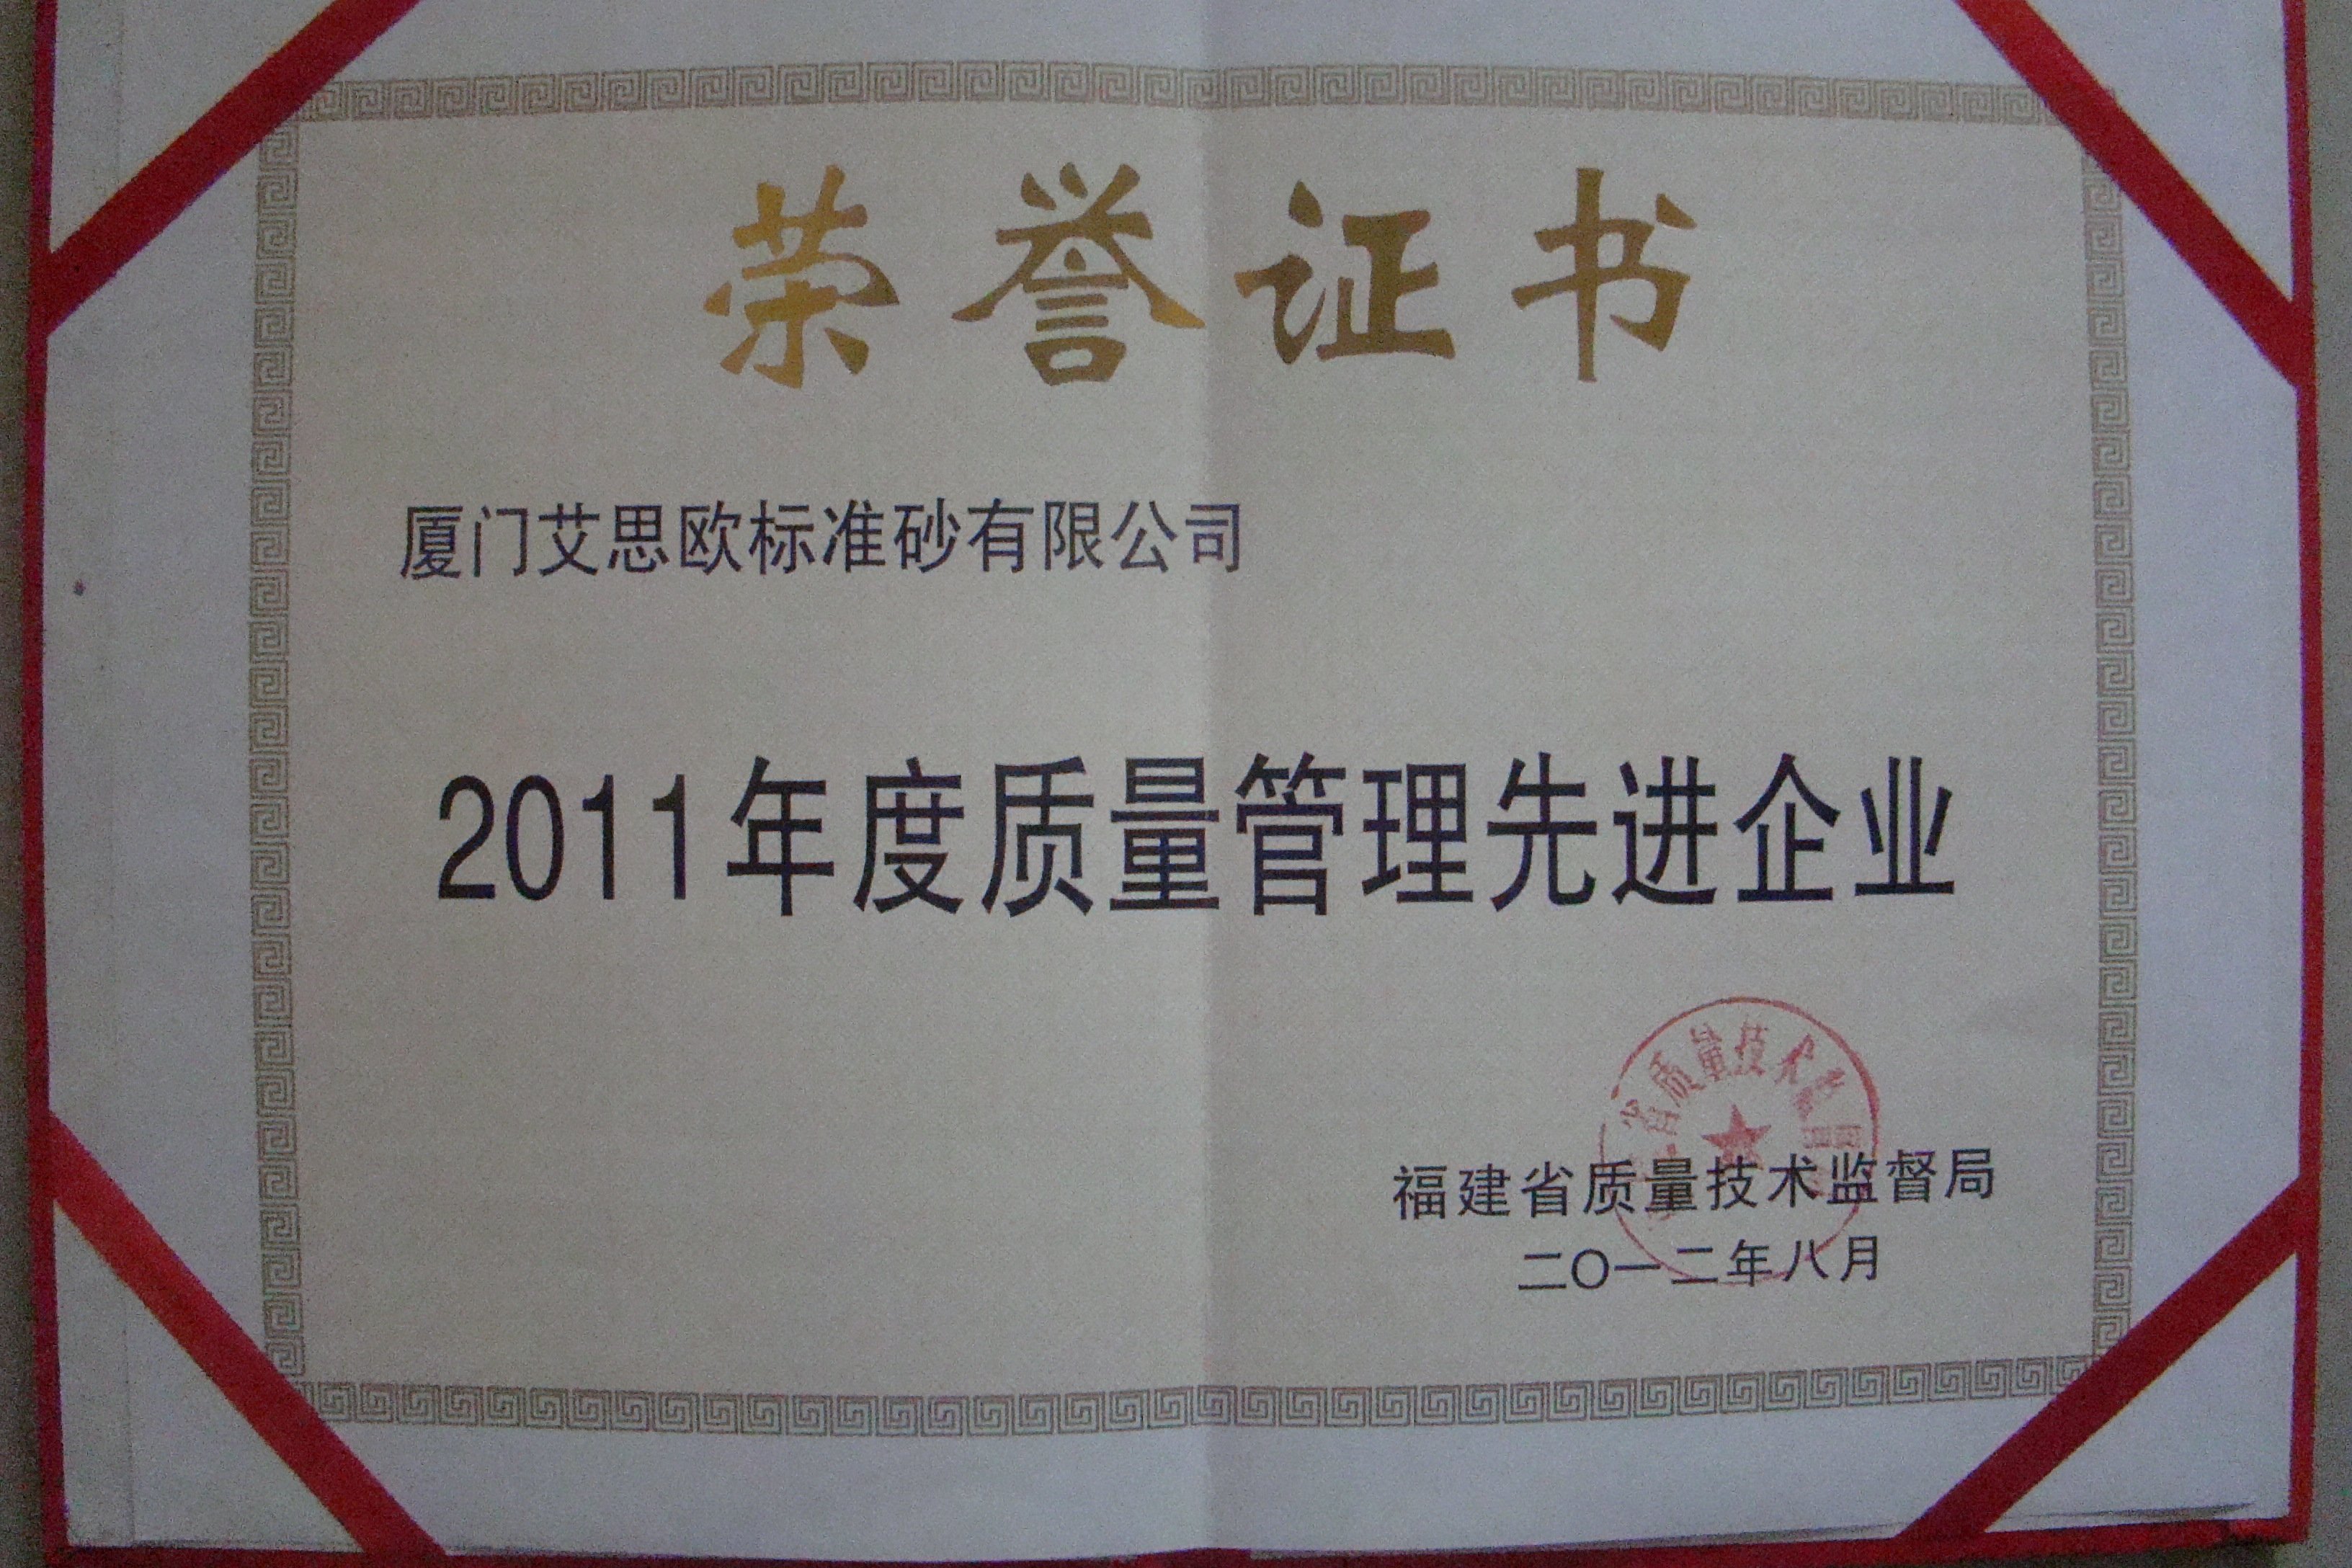 厦门标准砂公司荣获“福建省质量管理先进企业”荣誉称号